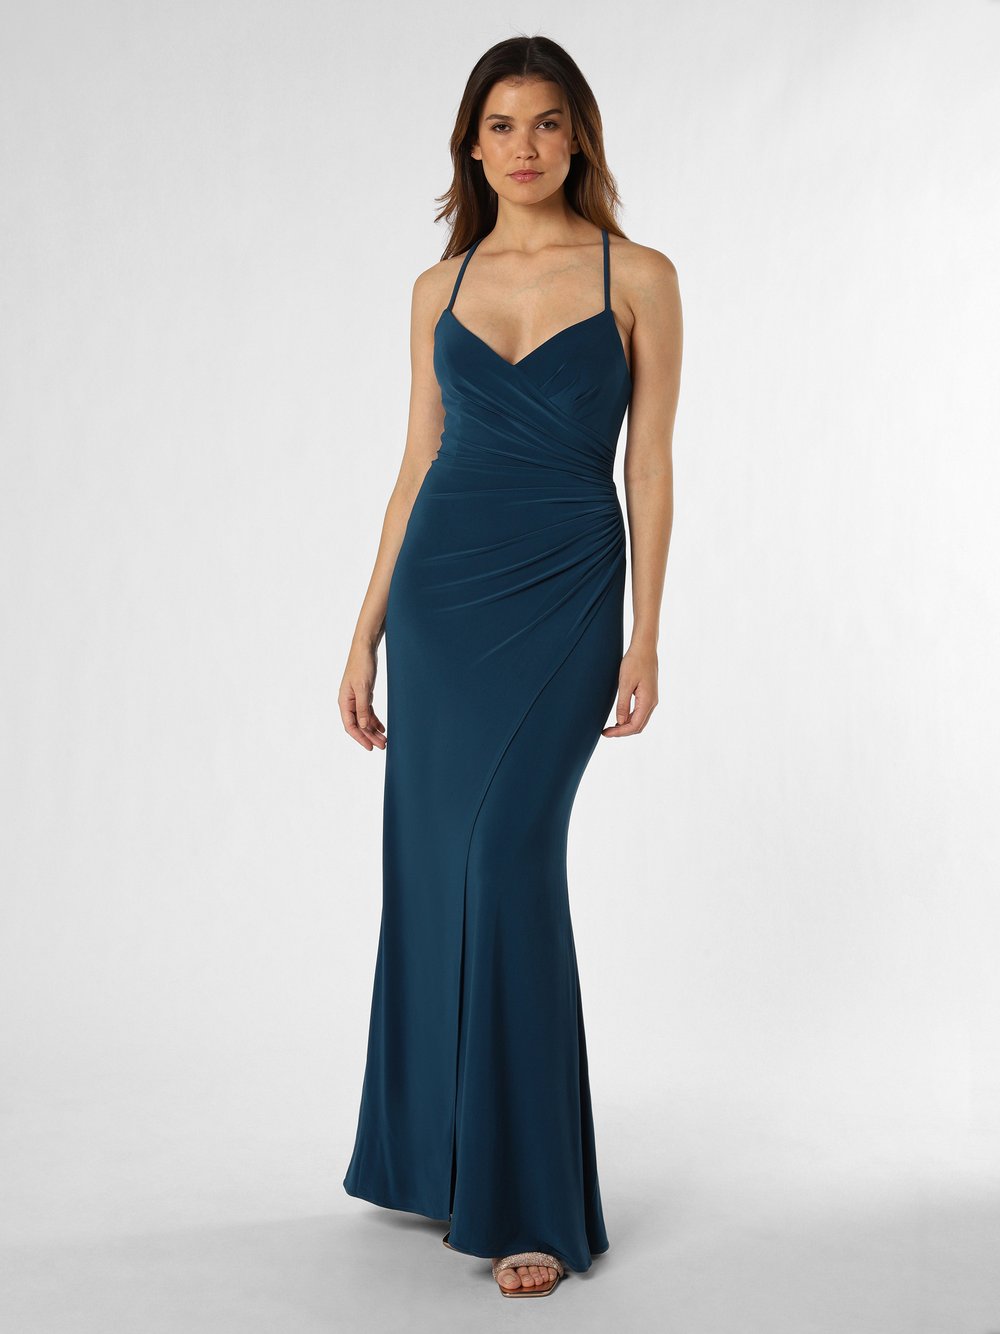 Obraz przedstawiający Luxuar Fashion Damska sukienka wieczorowa Kobiety niebieski jednolity, 32